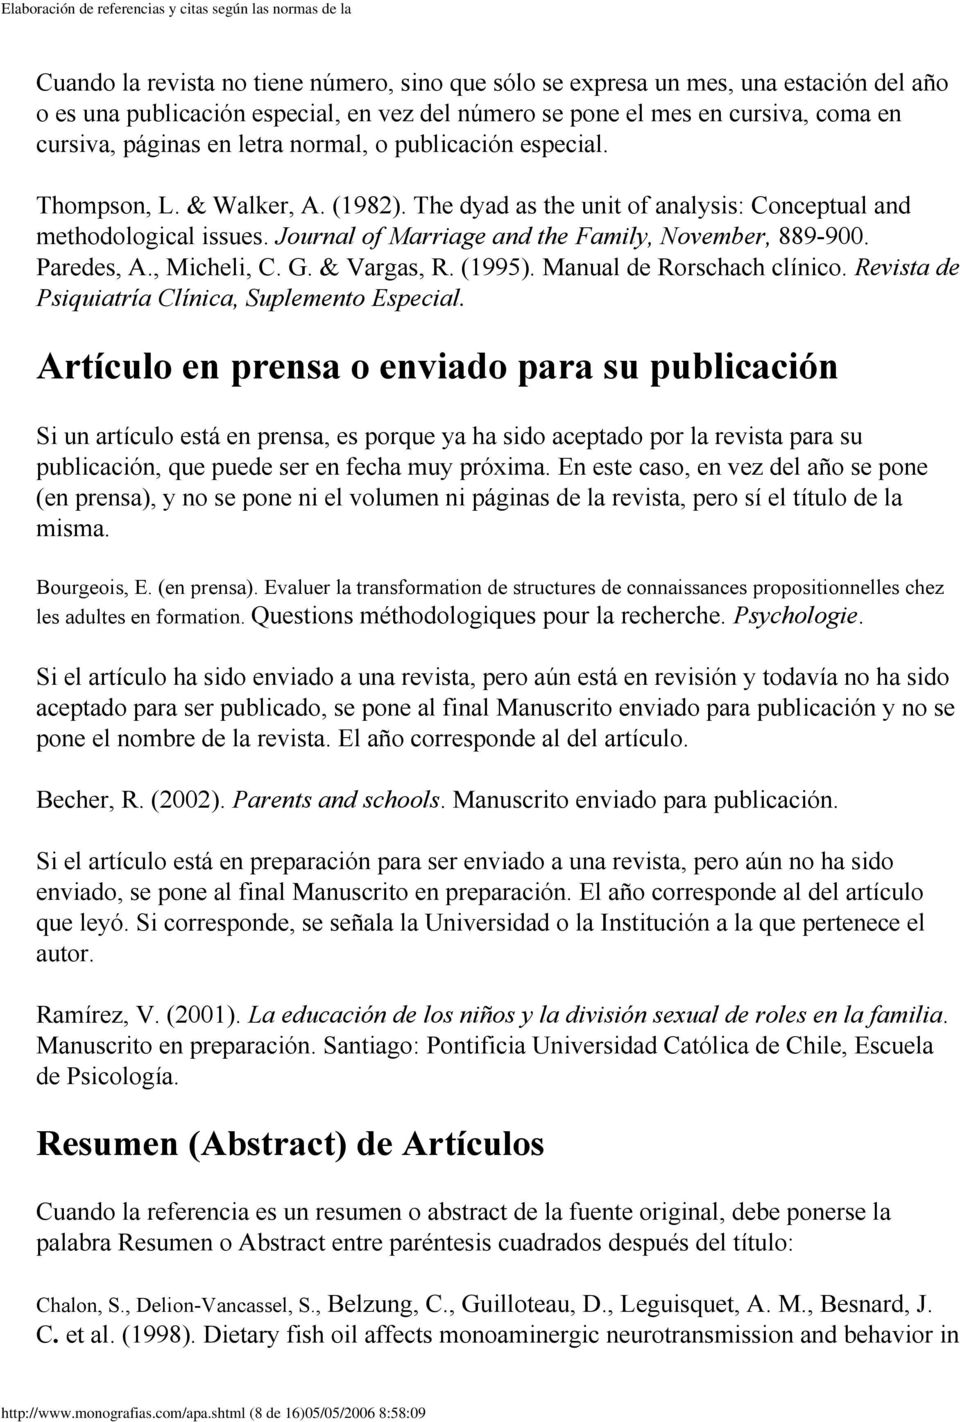 Paredes, A., Micheli, C. G. & Vargas, R. (1995). Manual de Rorschach clínico. Revista de Psiquiatría Clínica, Suplemento Especial.